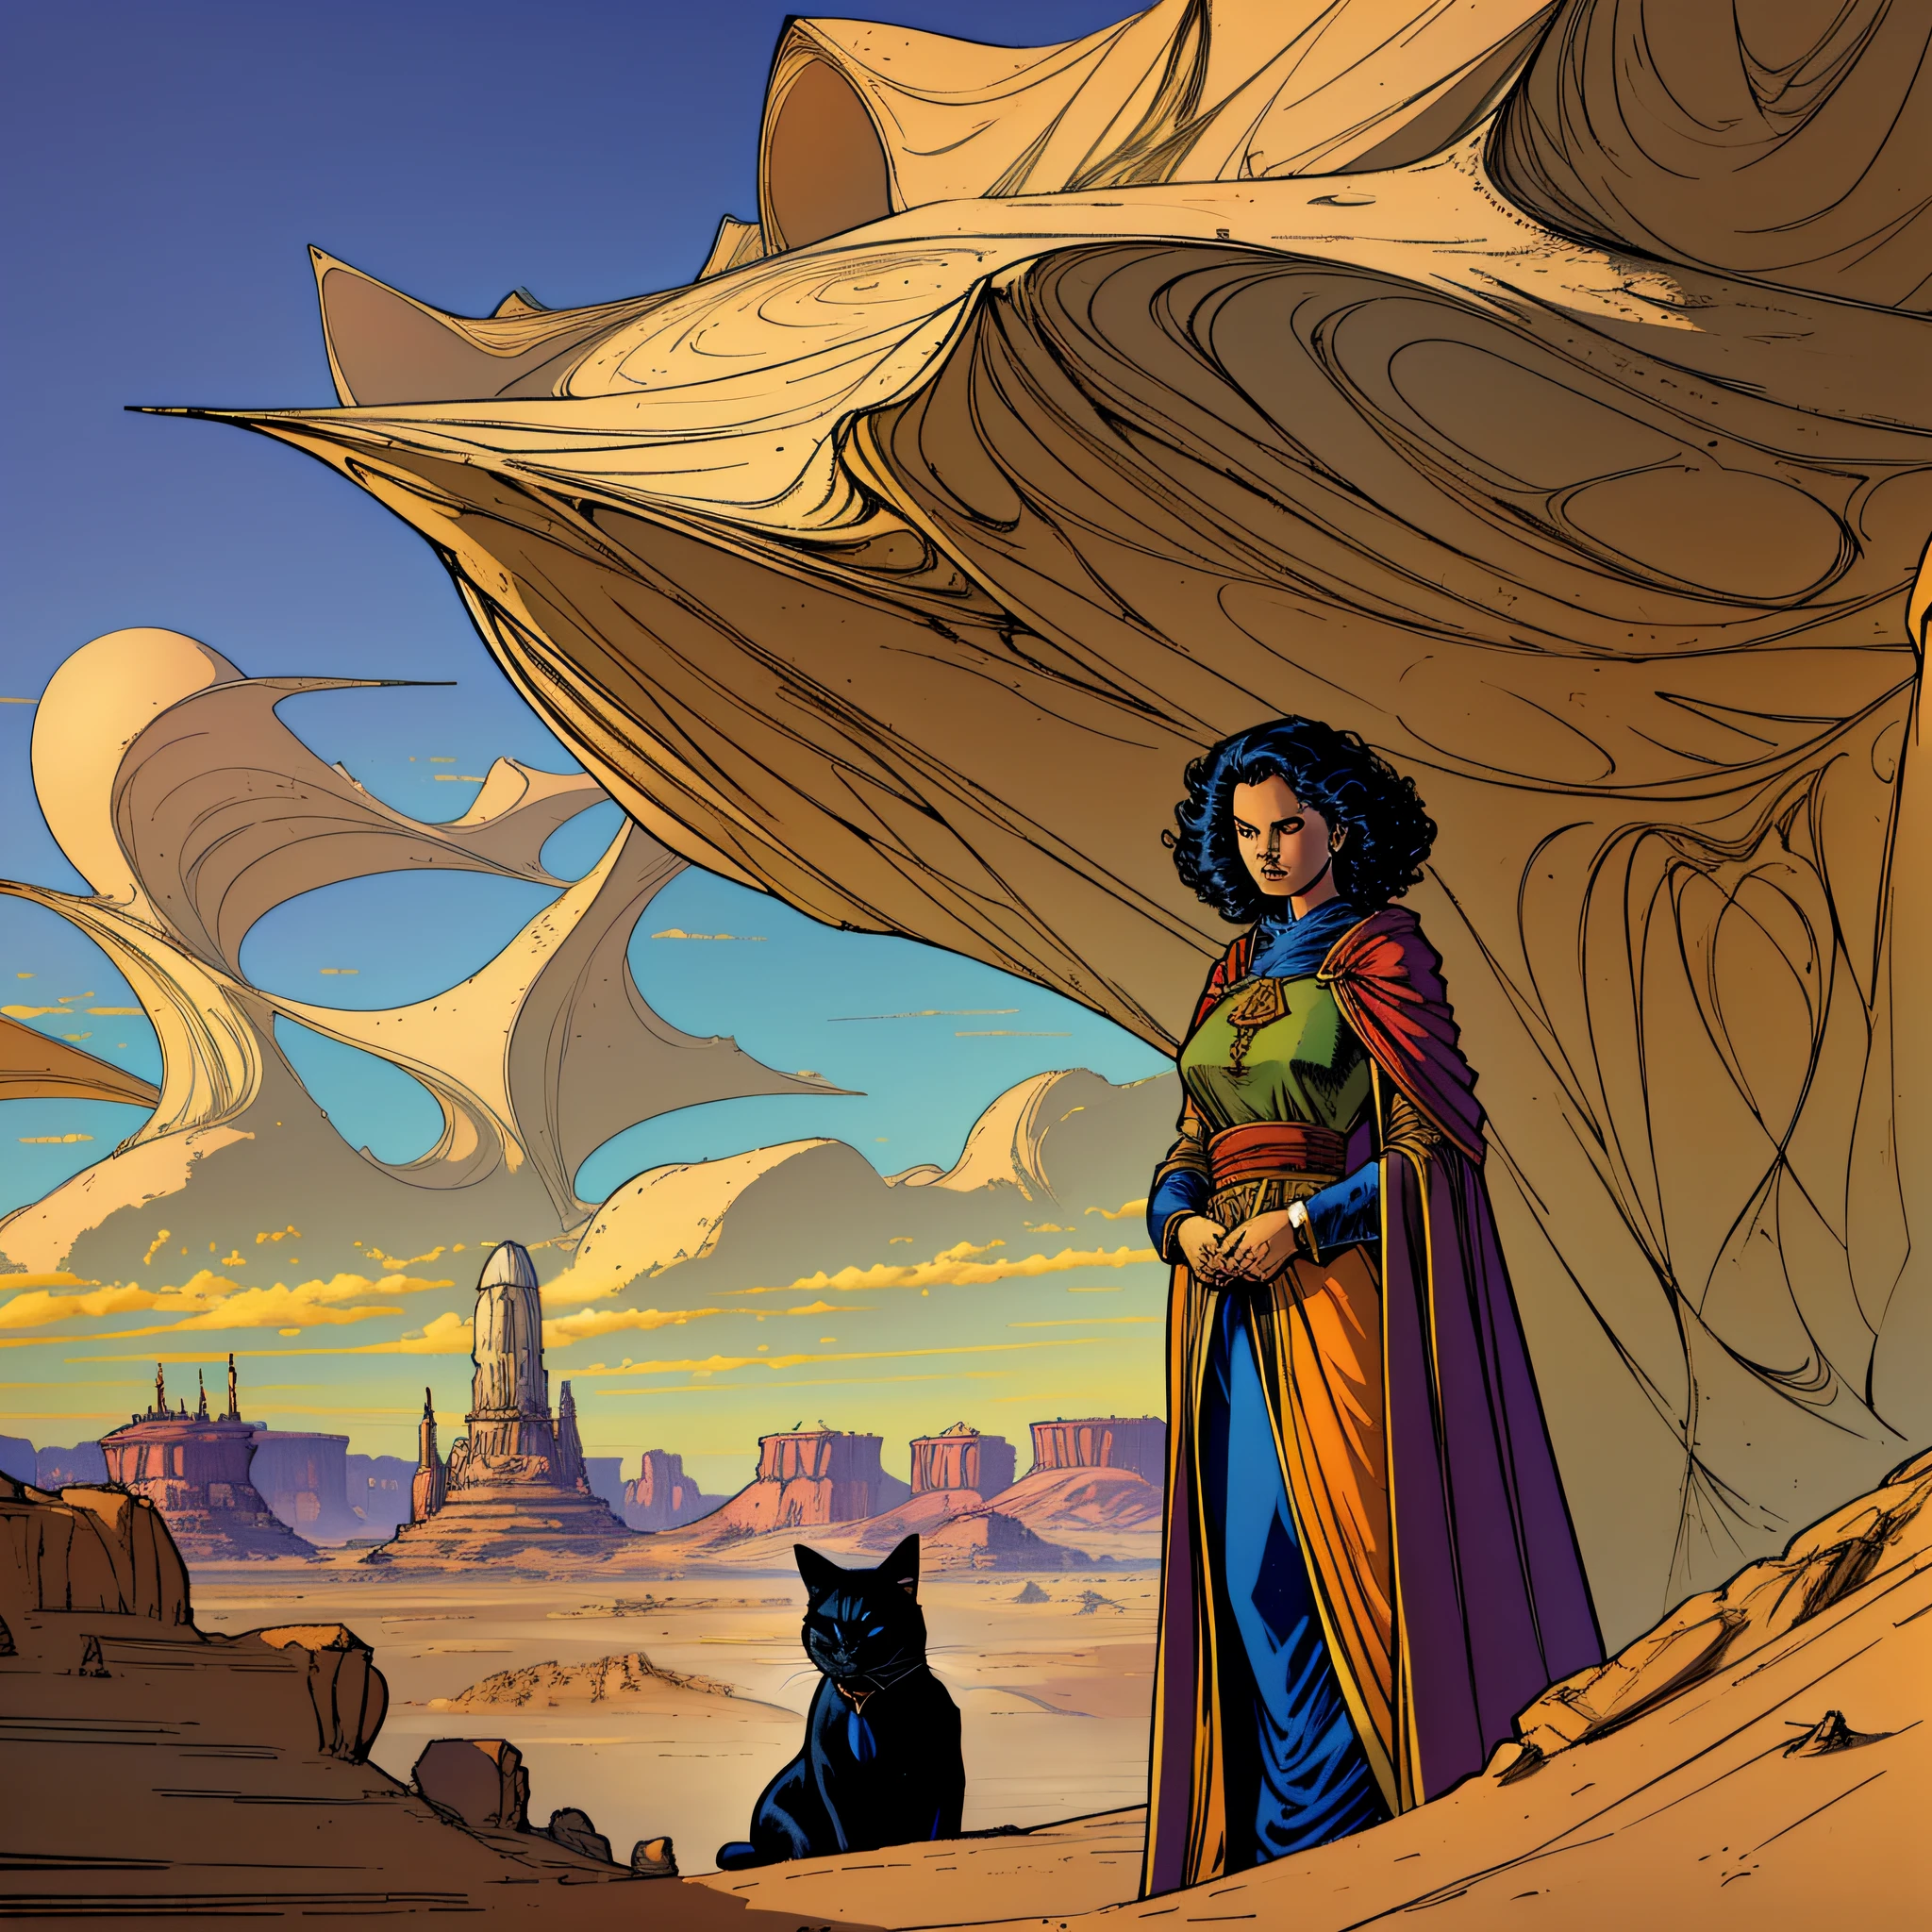 ((最高品質)), ボブヘアのマントを着た女性が黒猫と一緒に砂漠の風景を眺めている絵, モービウス ジャン・ジロー, パンダ・フー